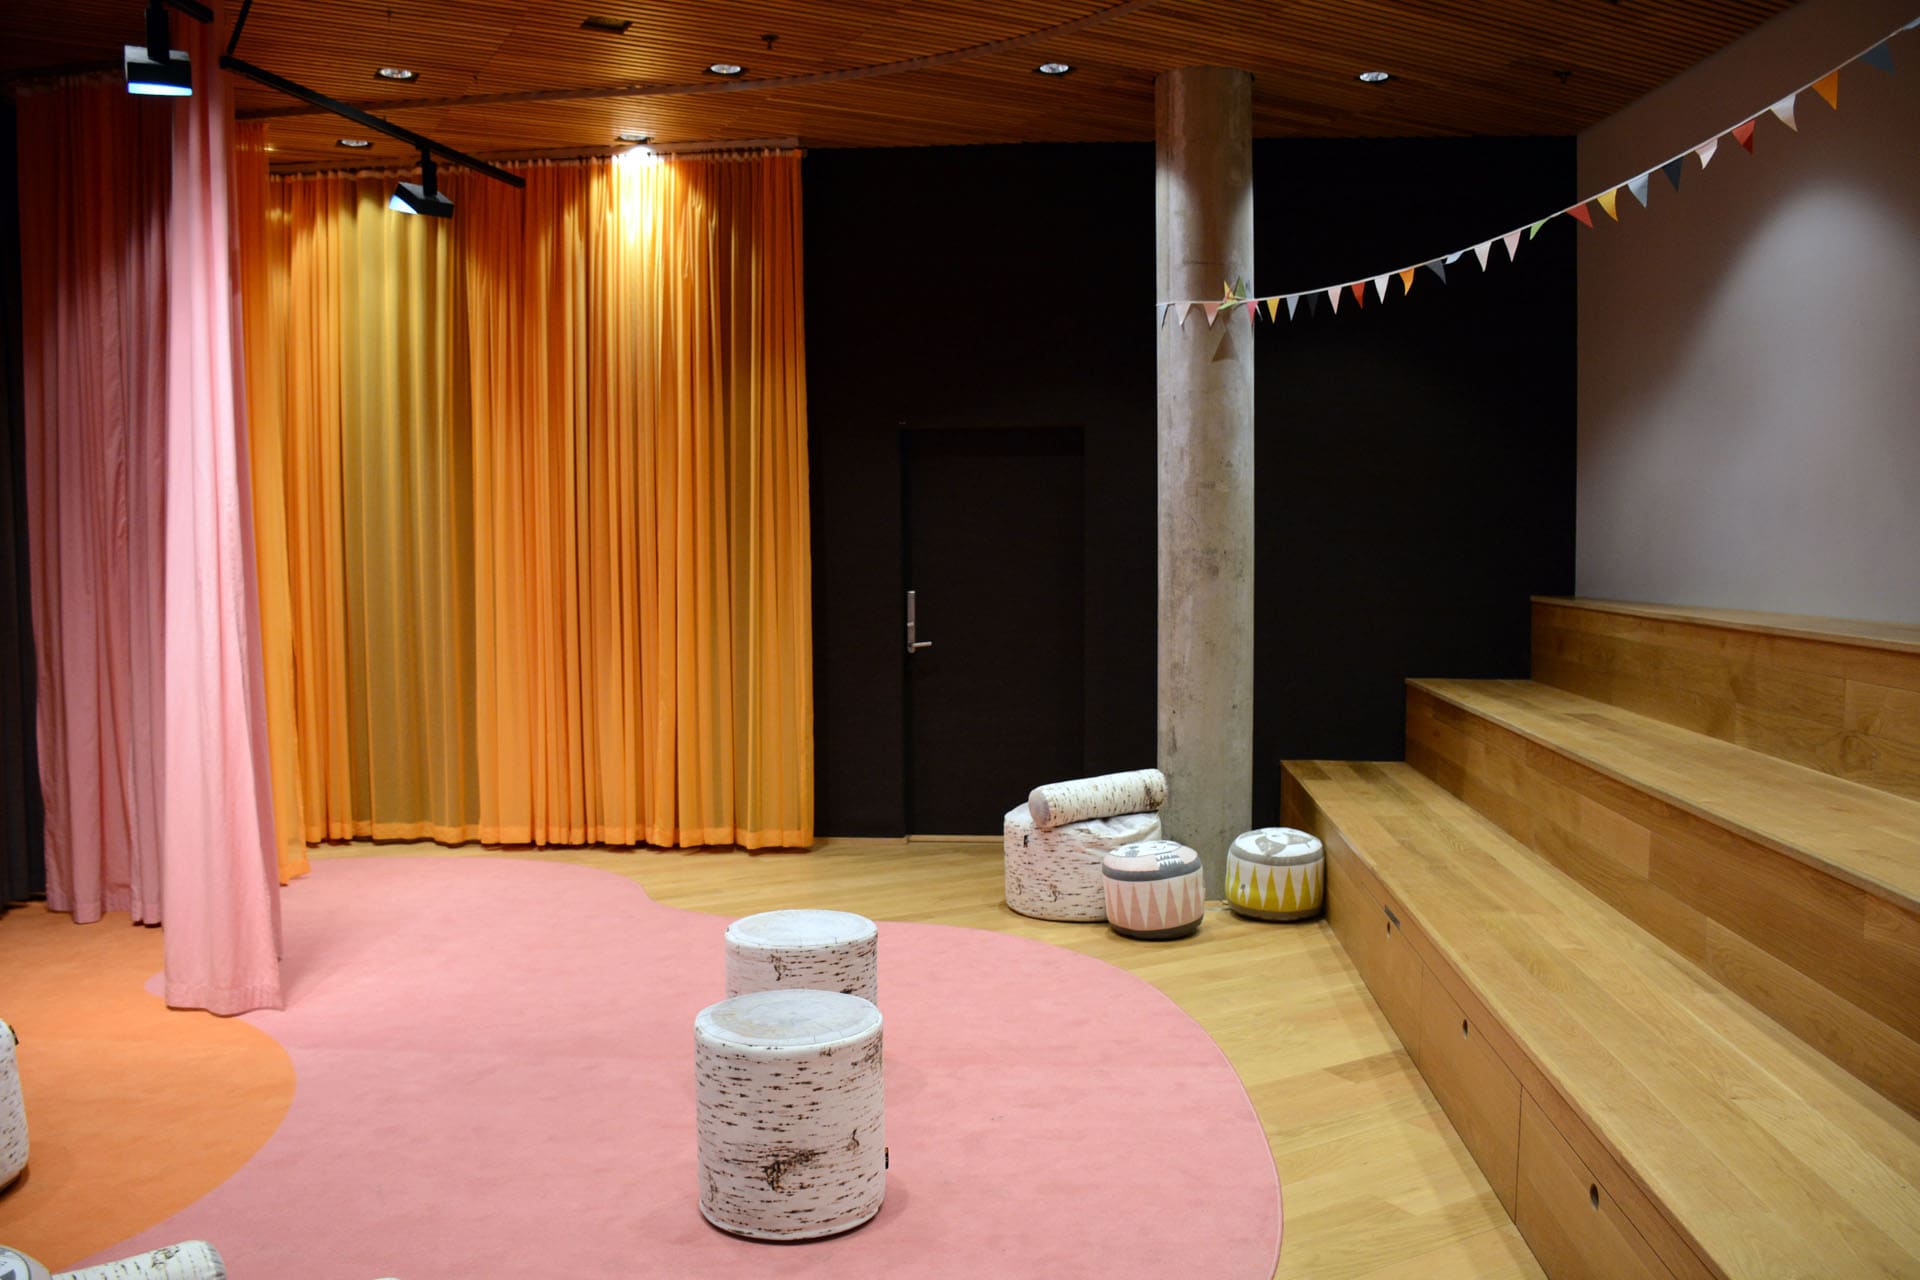 Väven – Umeå Cultural Center